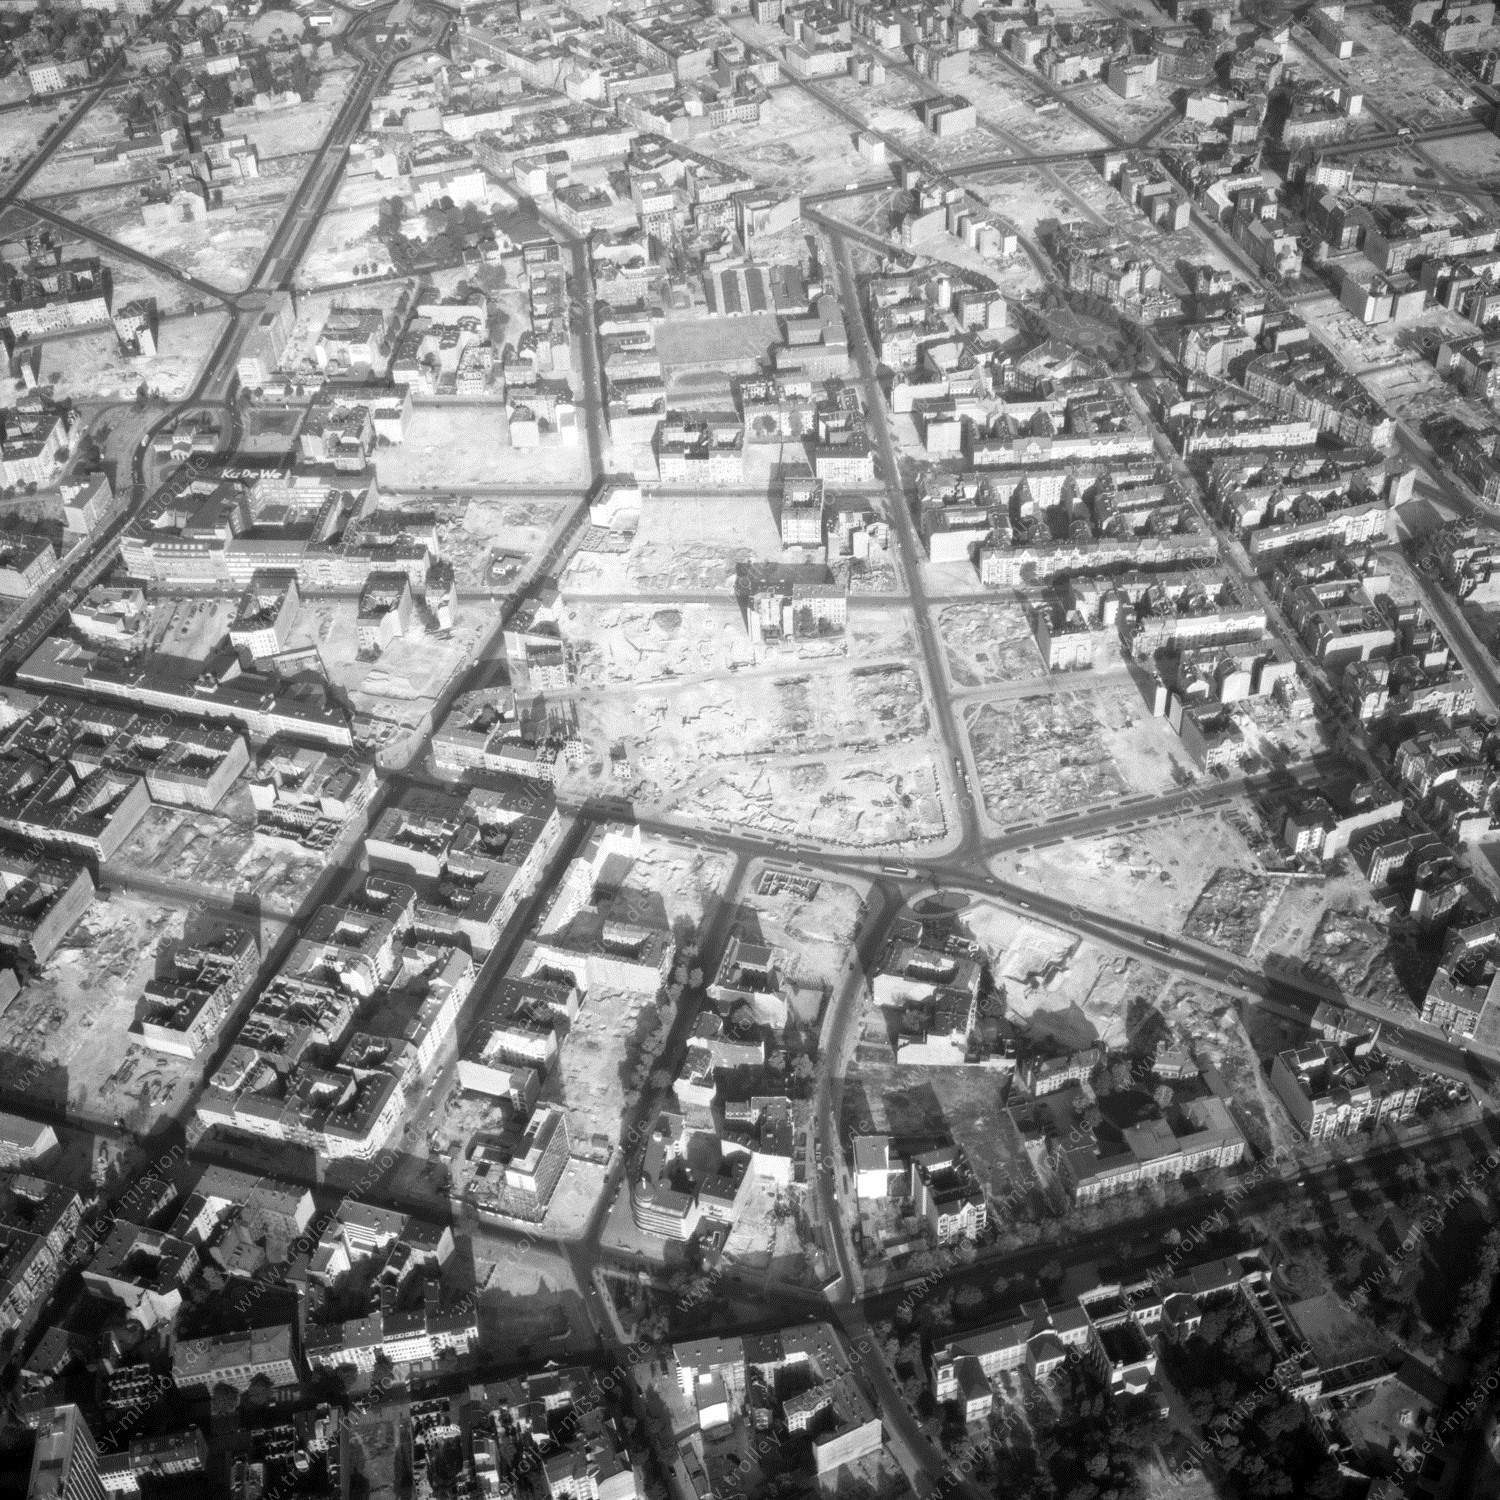 Alte Fotos und Luftbilder von Berlin - Luftbildaufnahme Nr. 10 - Historische Luftaufnahmen von West-Berlin aus dem Jahr 1954 - Flugstrecke Echo